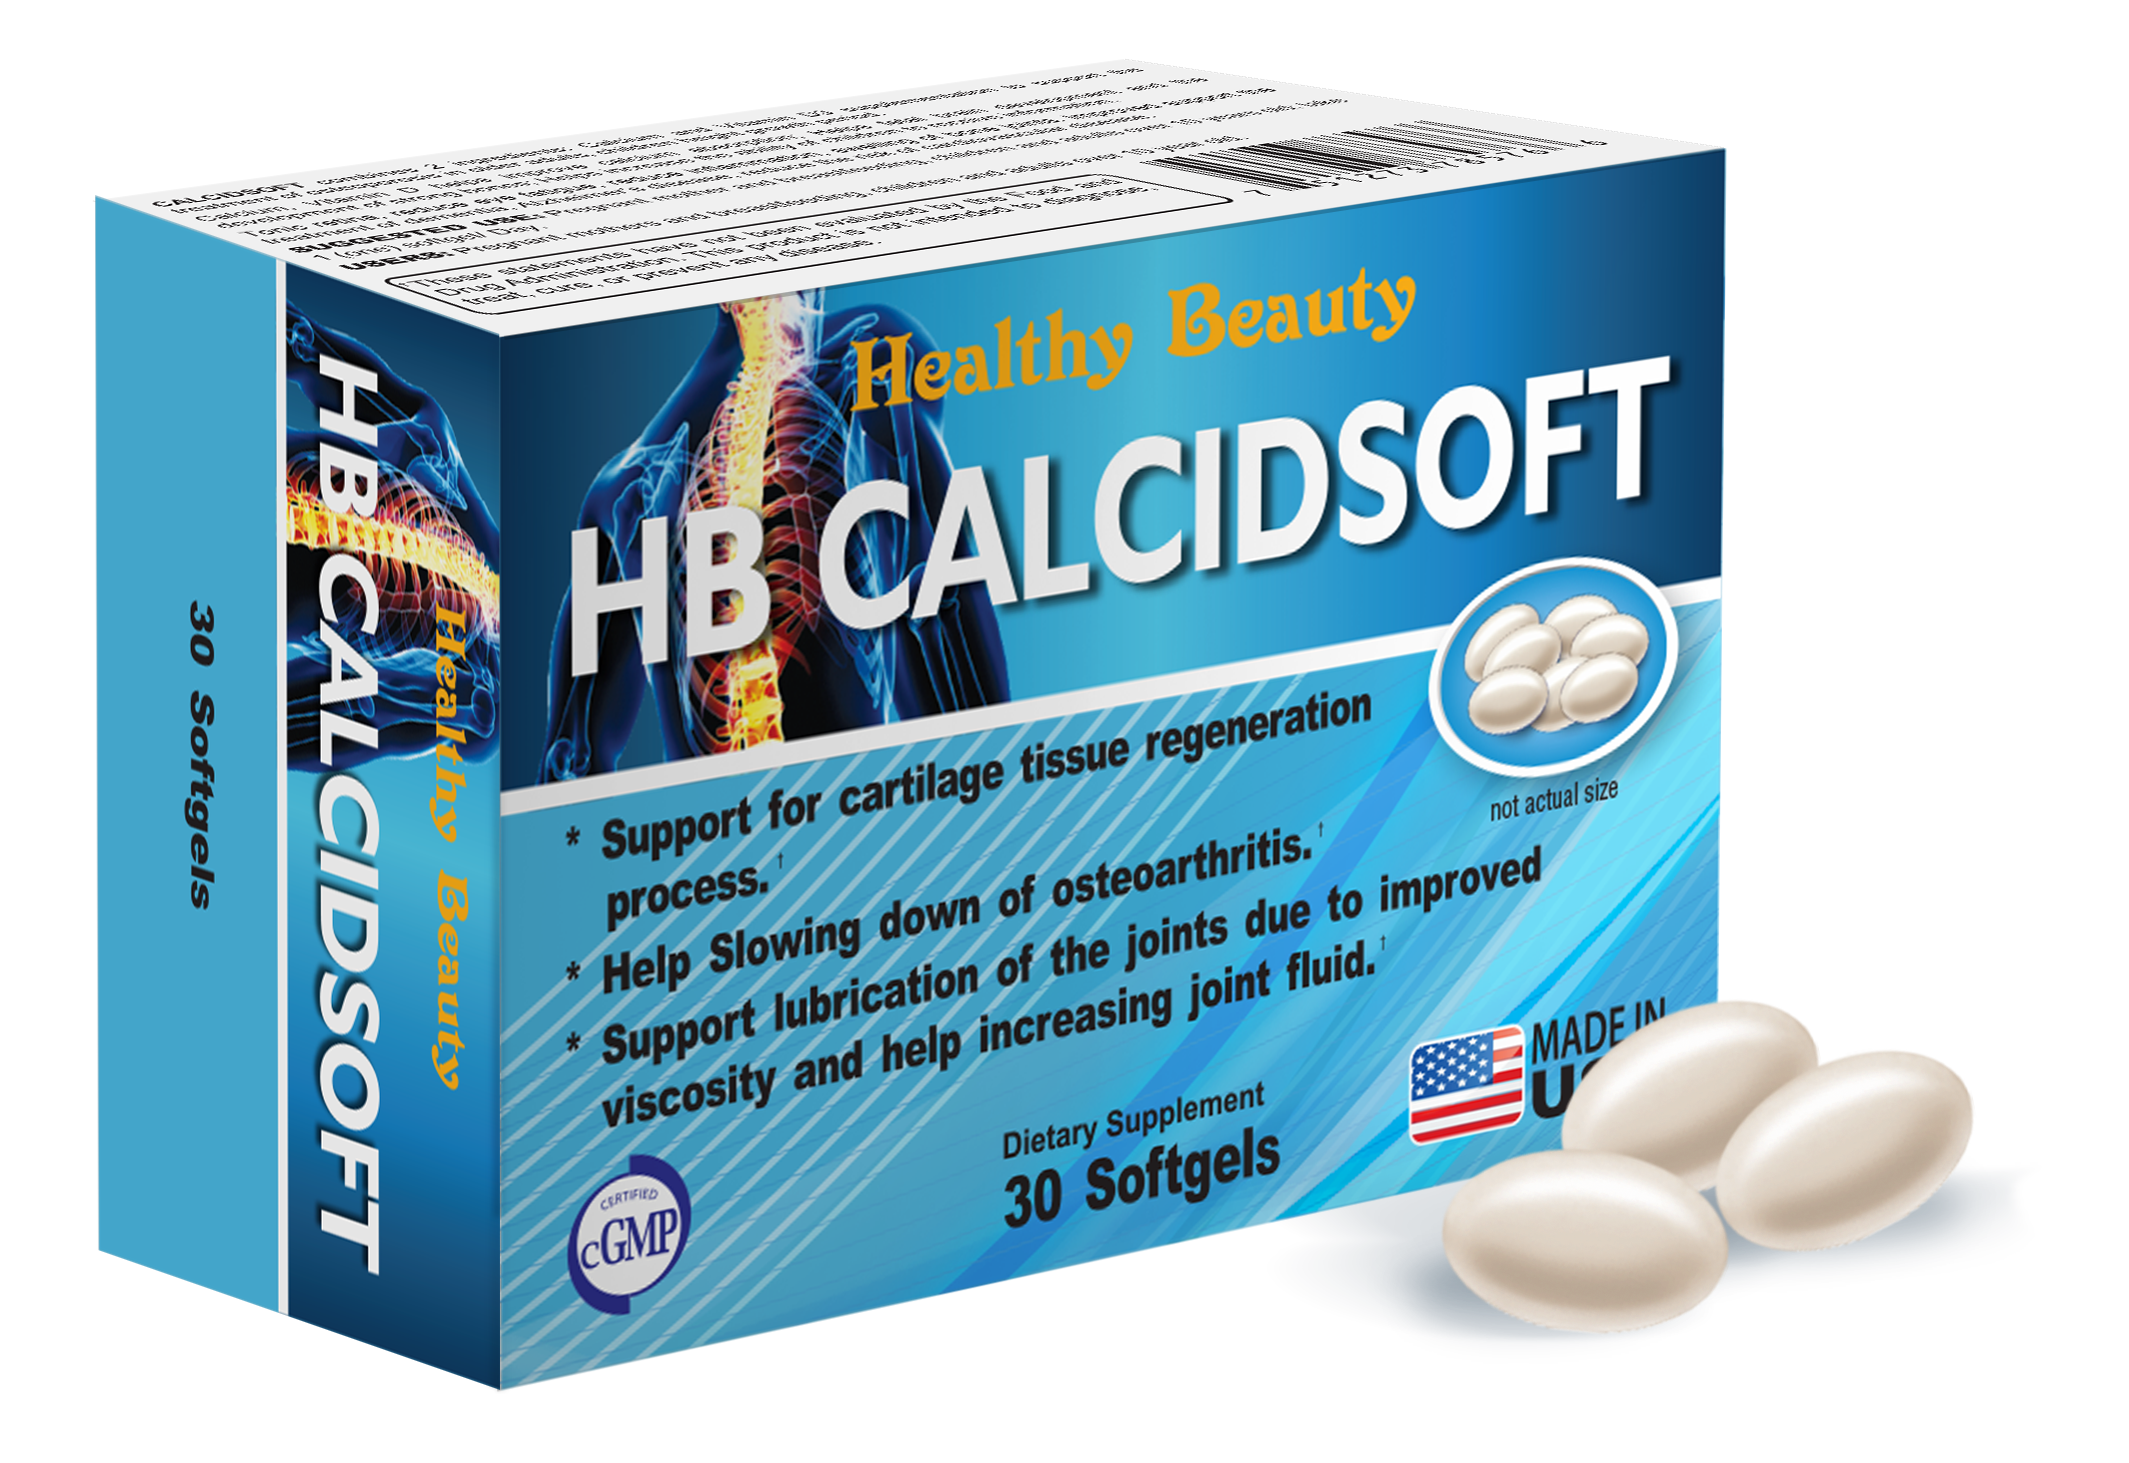 [CHÍNH HÃNG] Viên uống bổ sung Calcium và vitamin D Healthy Beauty Calcidsoft nhập khẩu Mỹ giúp xương chắc khỏe, phòng chống loãng xương hộp 30 viên